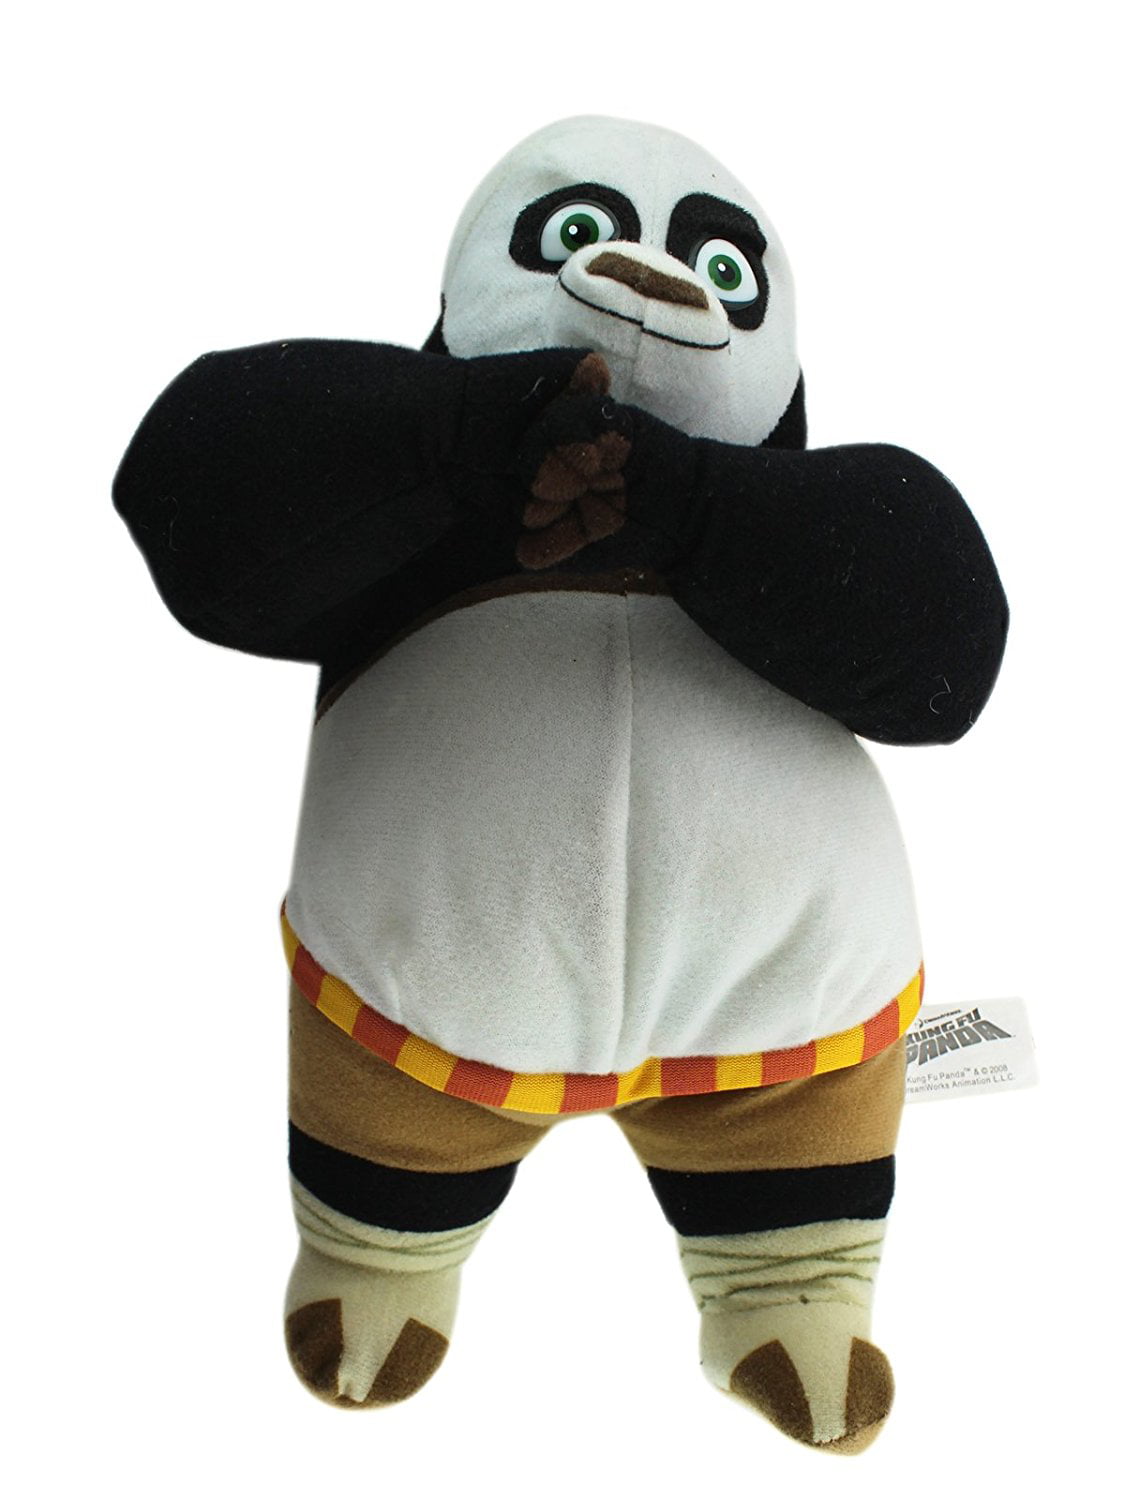 Kung Fu Panda Plush - Po Stuffed Animal - 8 Inch